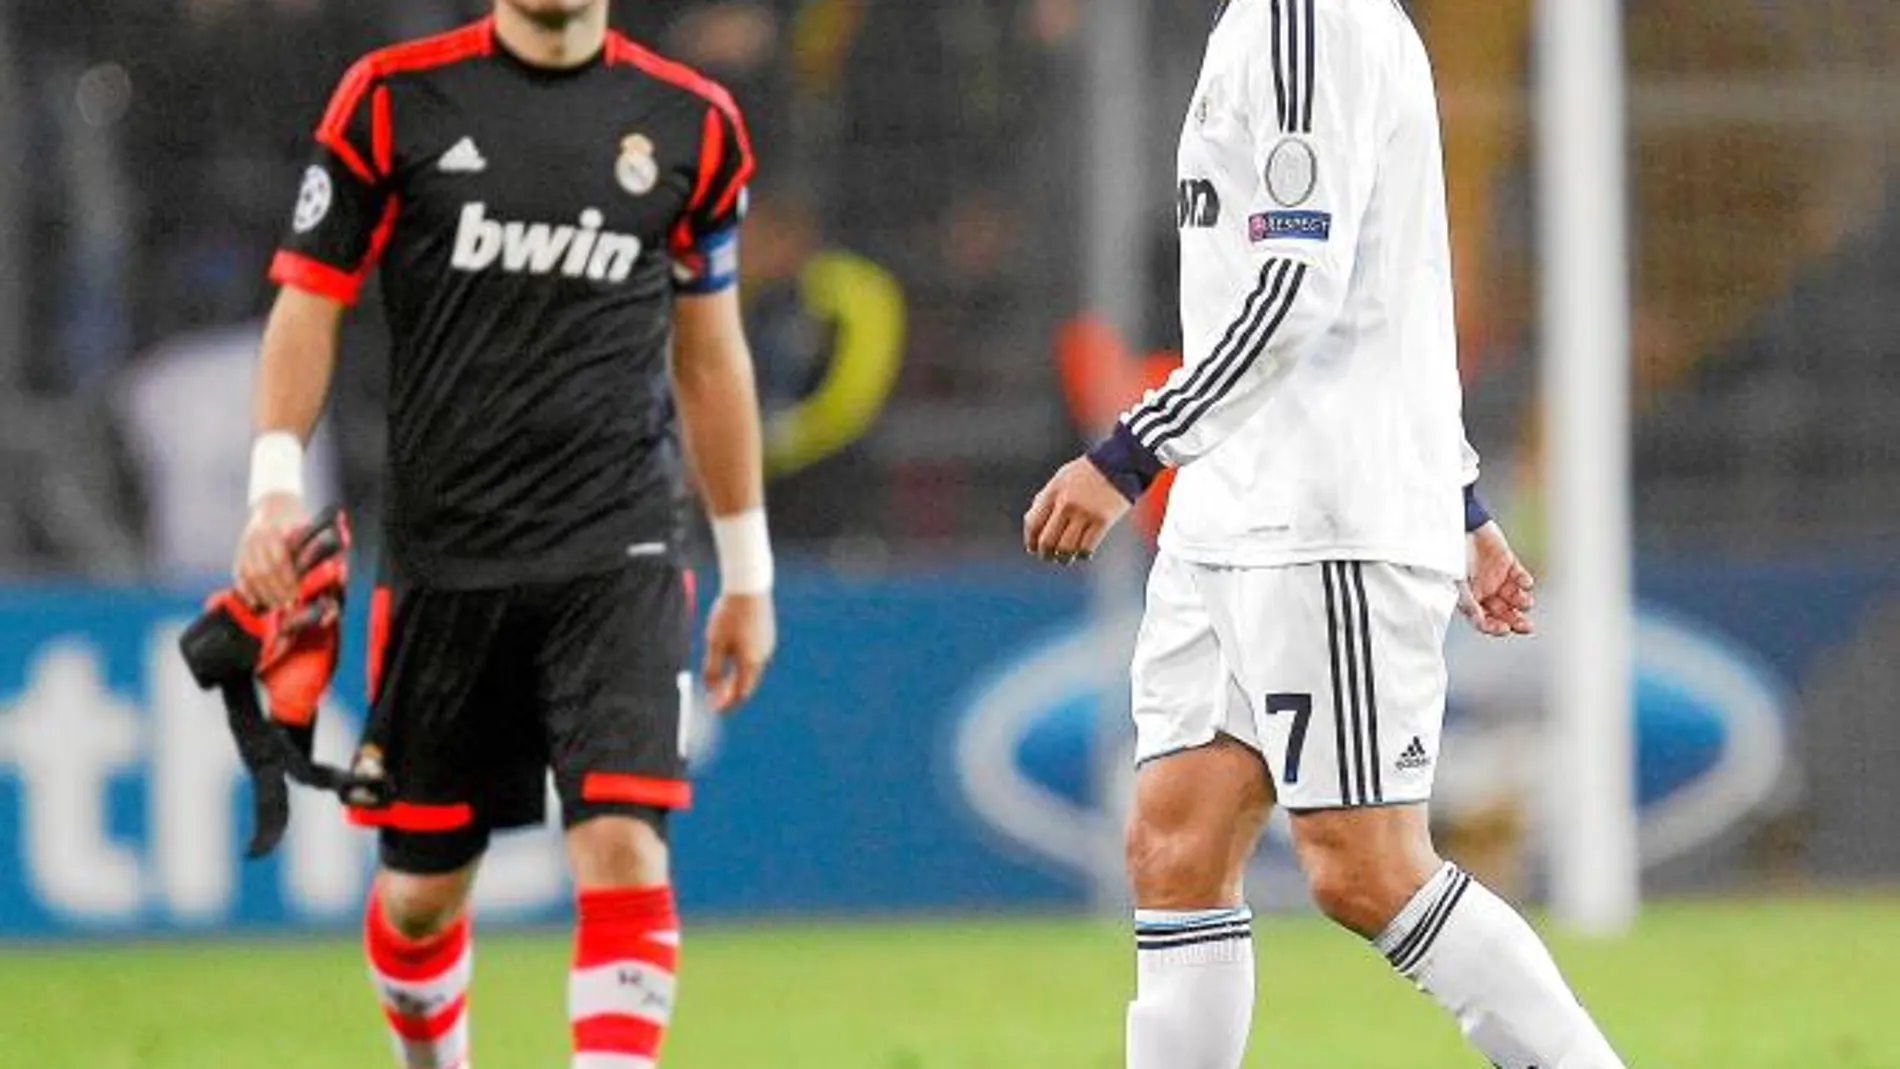 Casillas y Cristiano Ronaldo, desolados tras caer ante el Borussia Dortmund